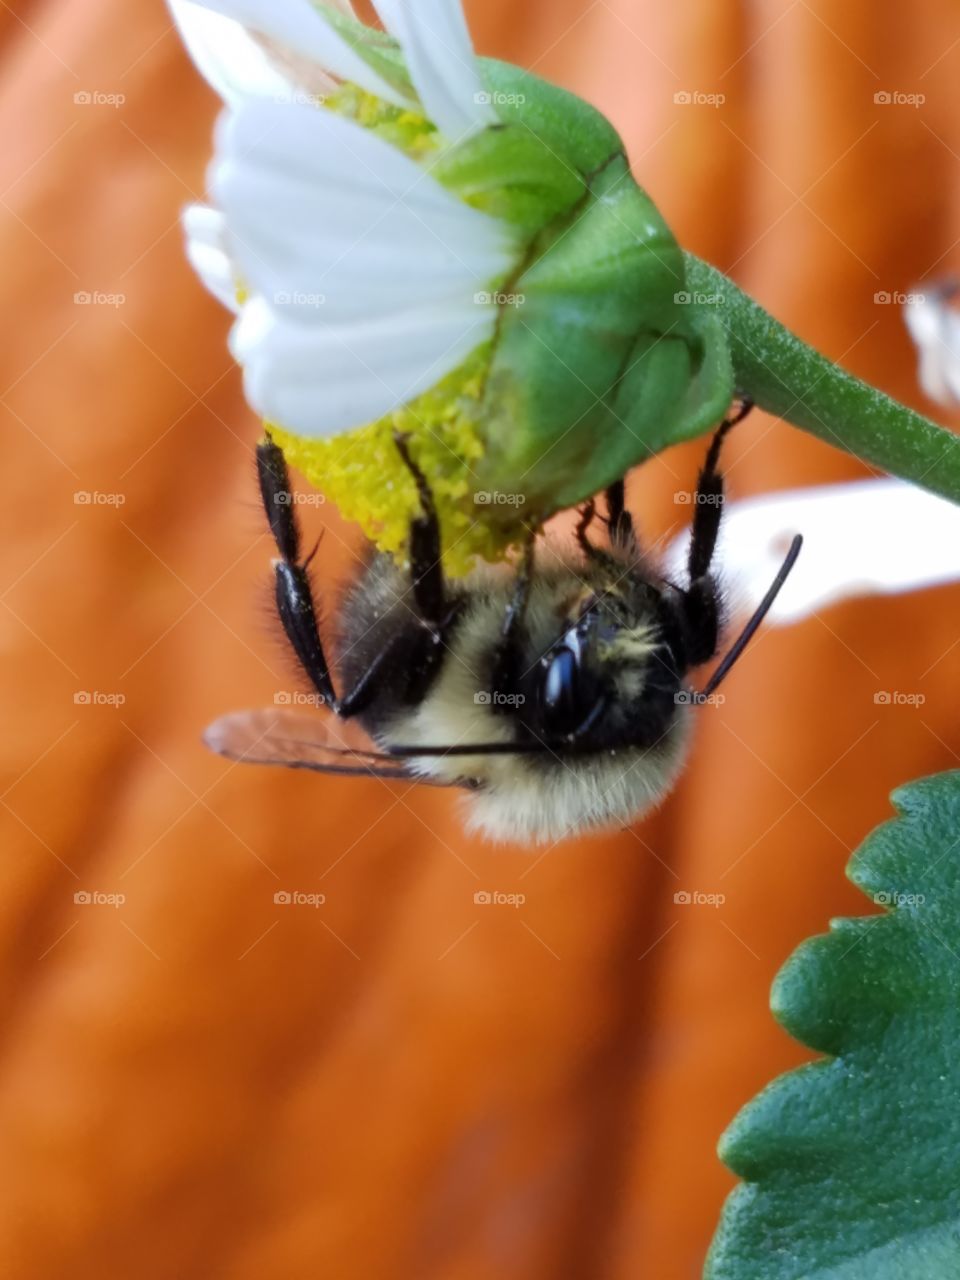 honey bee gathers pollen